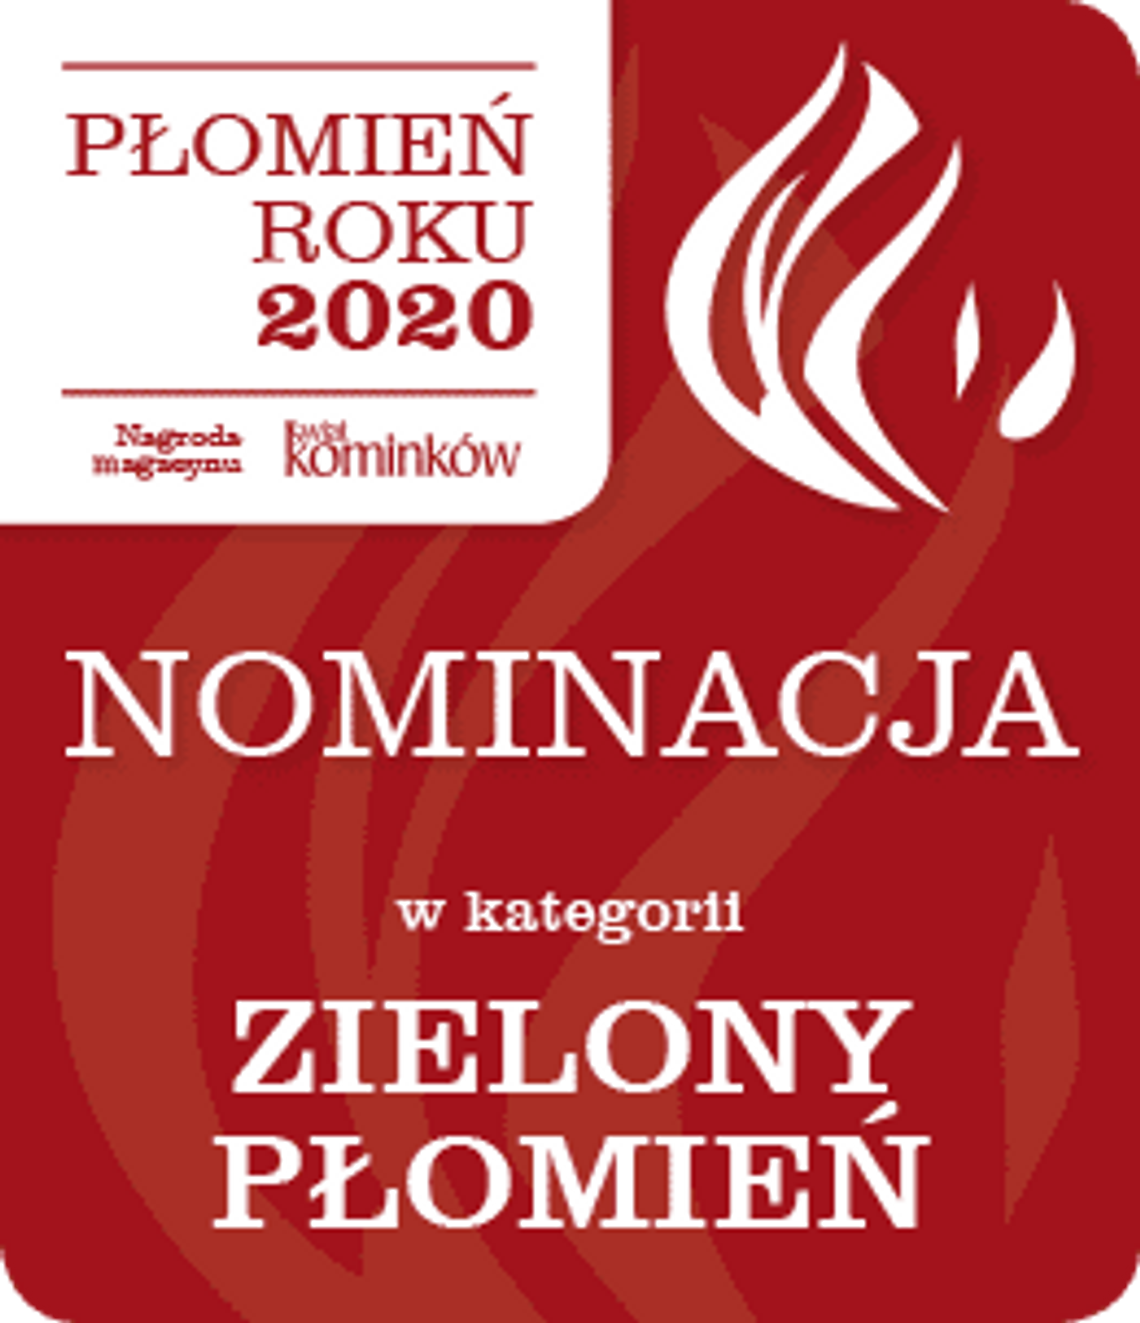 Płomień Roku 2020 - nominacje w kategorii Zielony Płomień